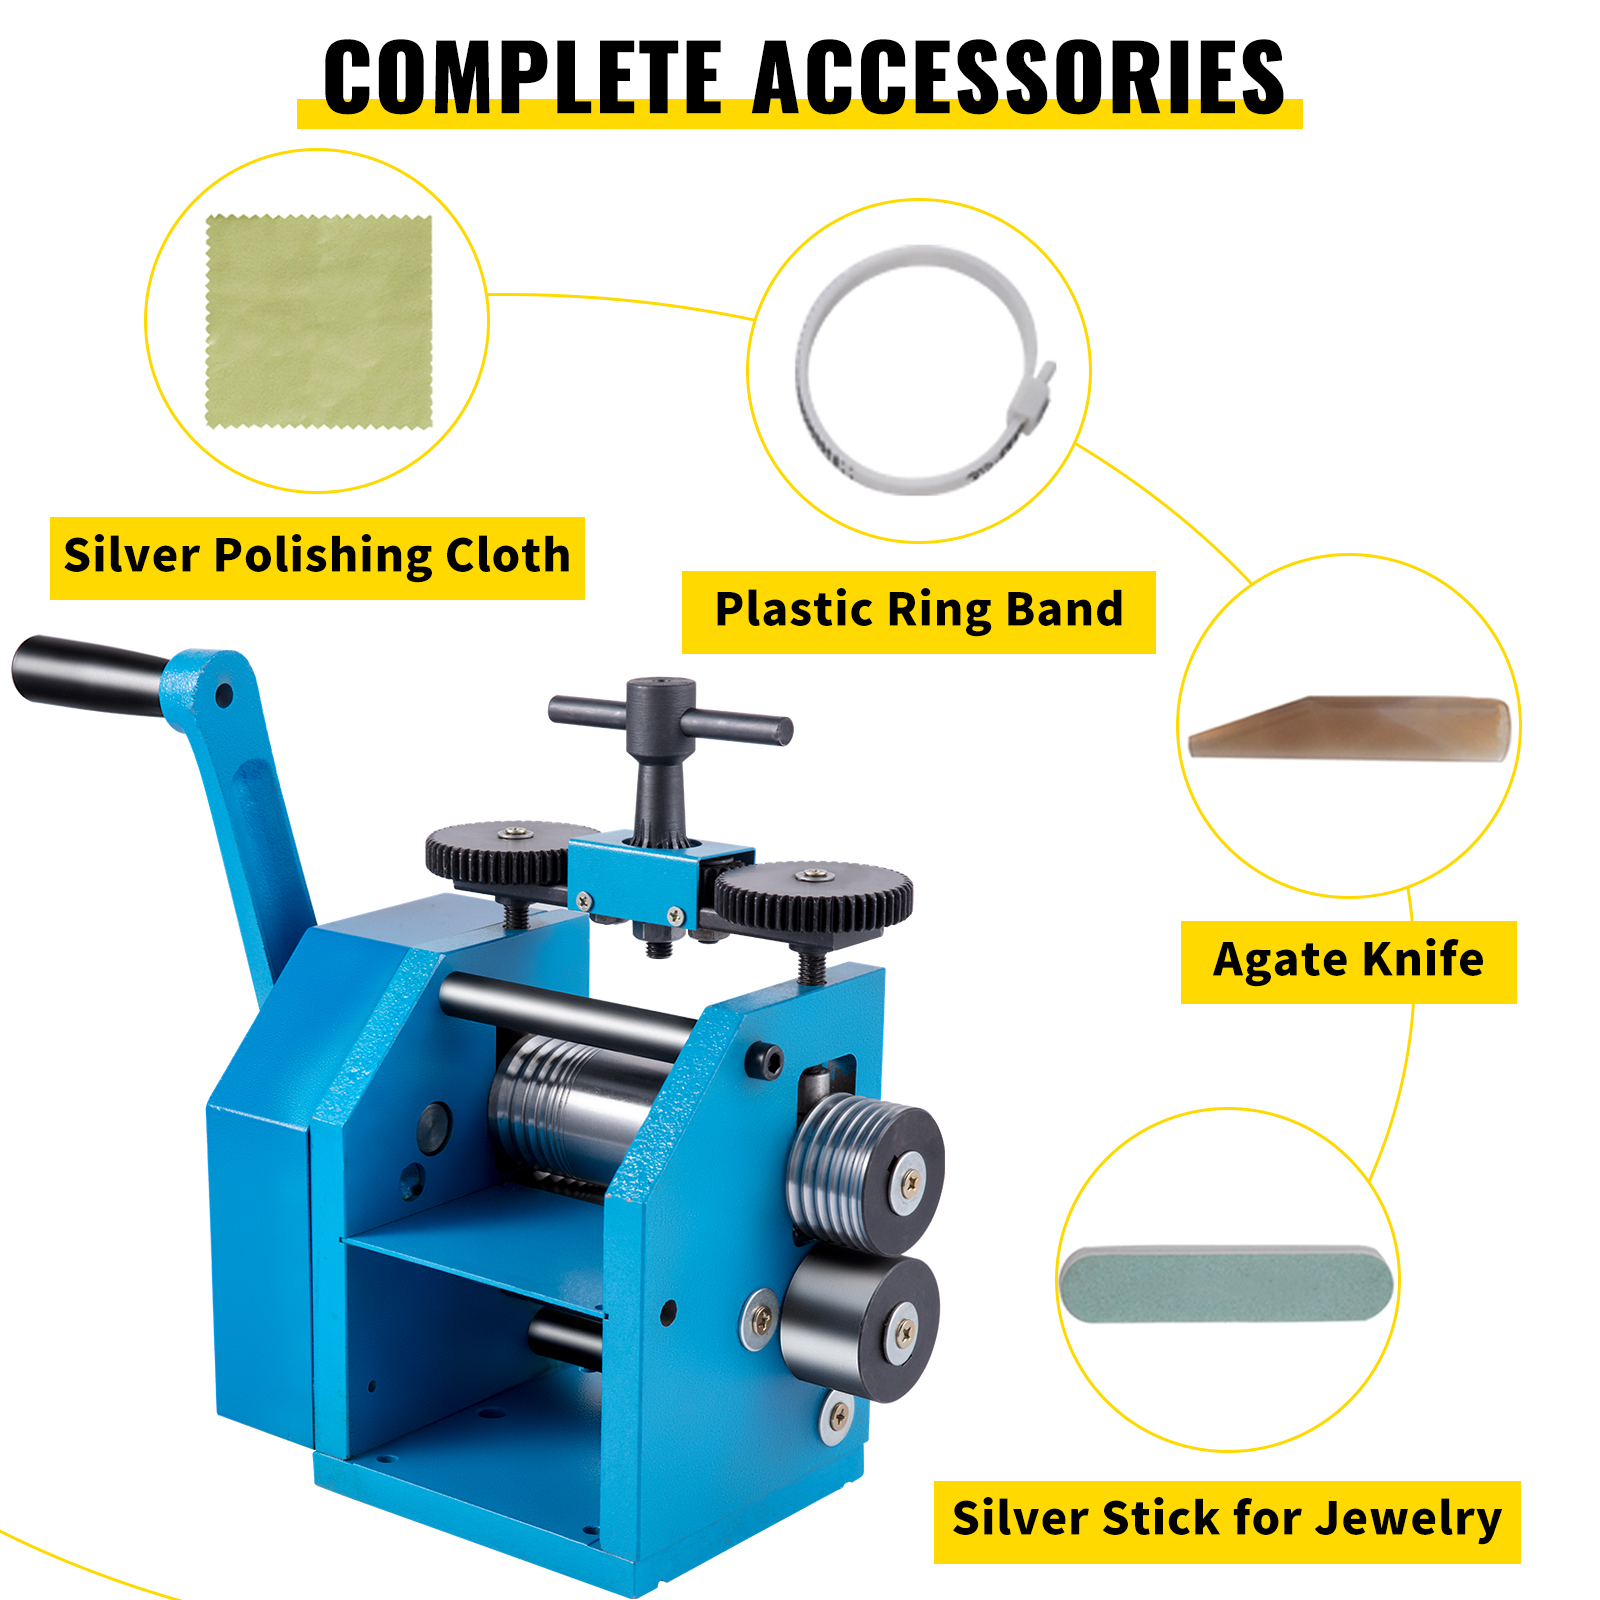 Manual Rolling Mill Jewelry Press Machine, Steel Jewelry Press Tabletting  Tool 3(75mm) Manual Combination Rolling Mill Machine